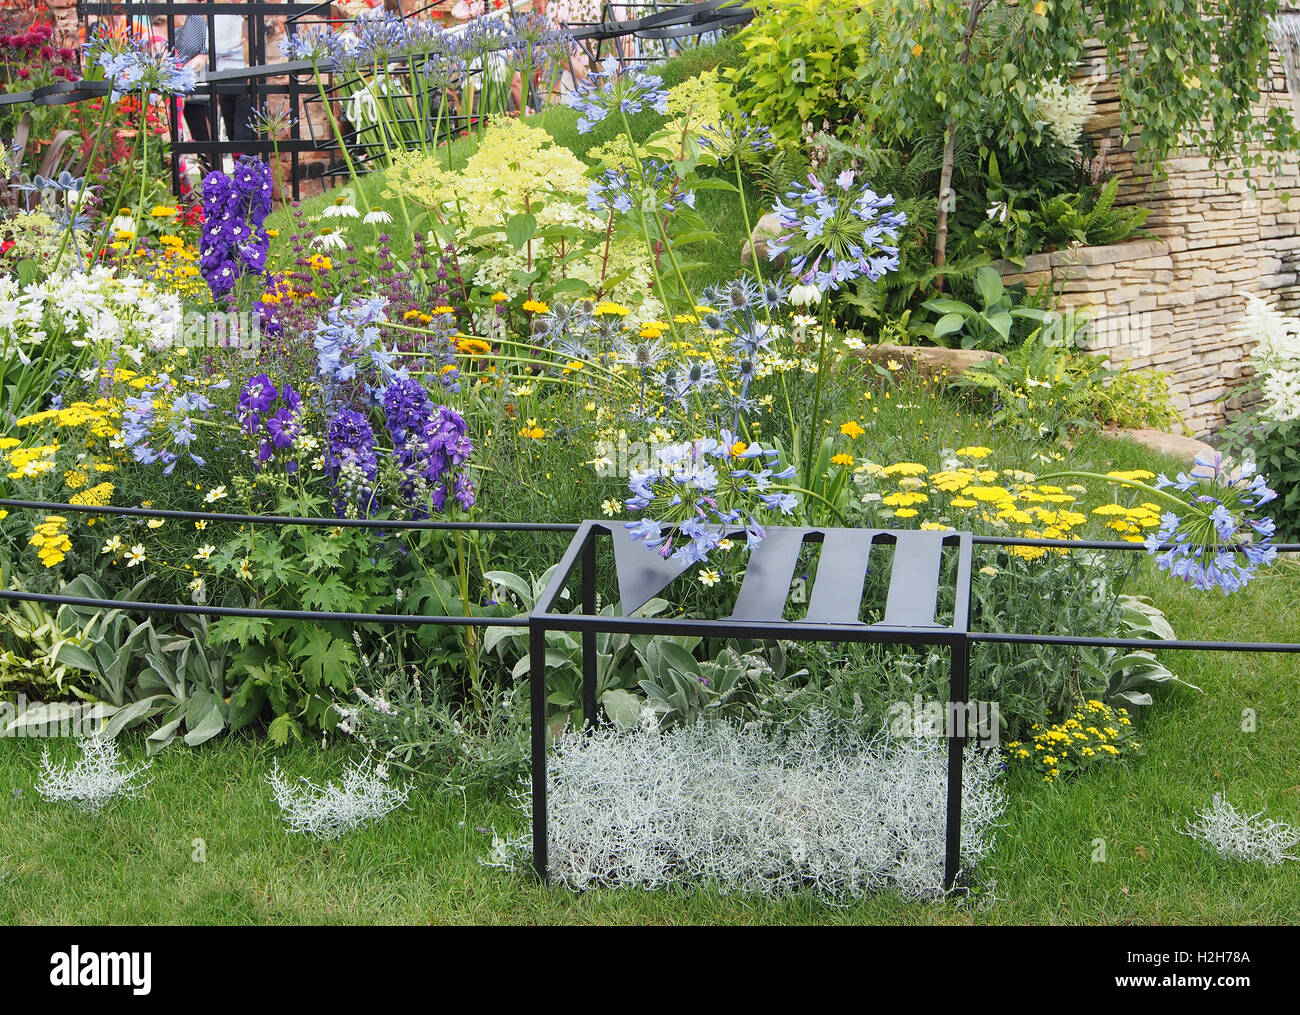 L'article de l'horloge jardin de sculptures à Tatton Park Flower Show, organisé par la Royal Horticultural Society en 2016 Banque D'Images